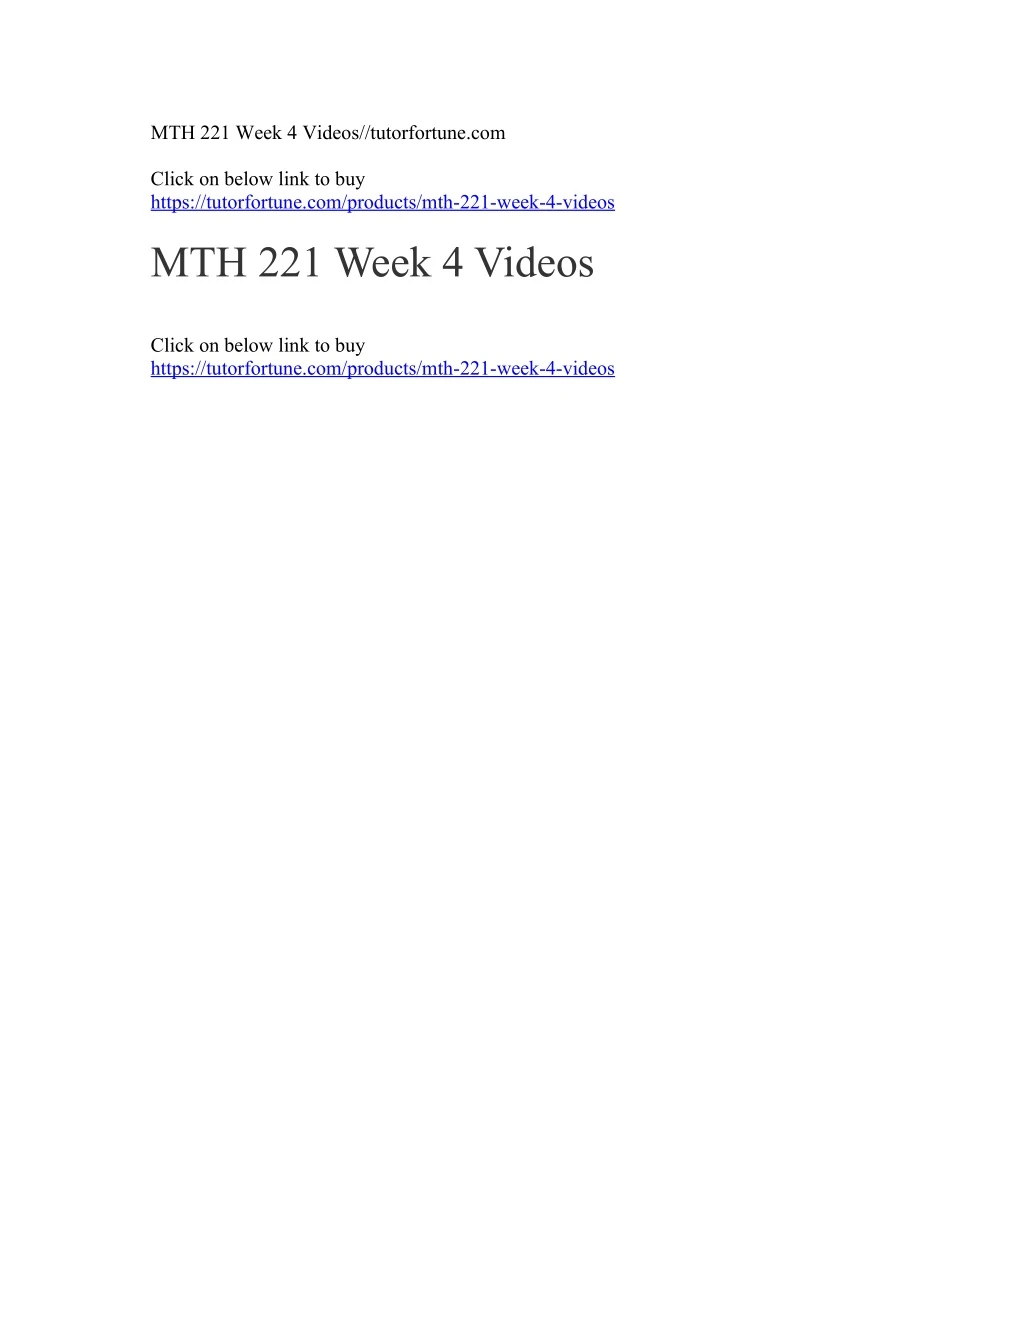 mth 221 week 4 videos tutorfortune com